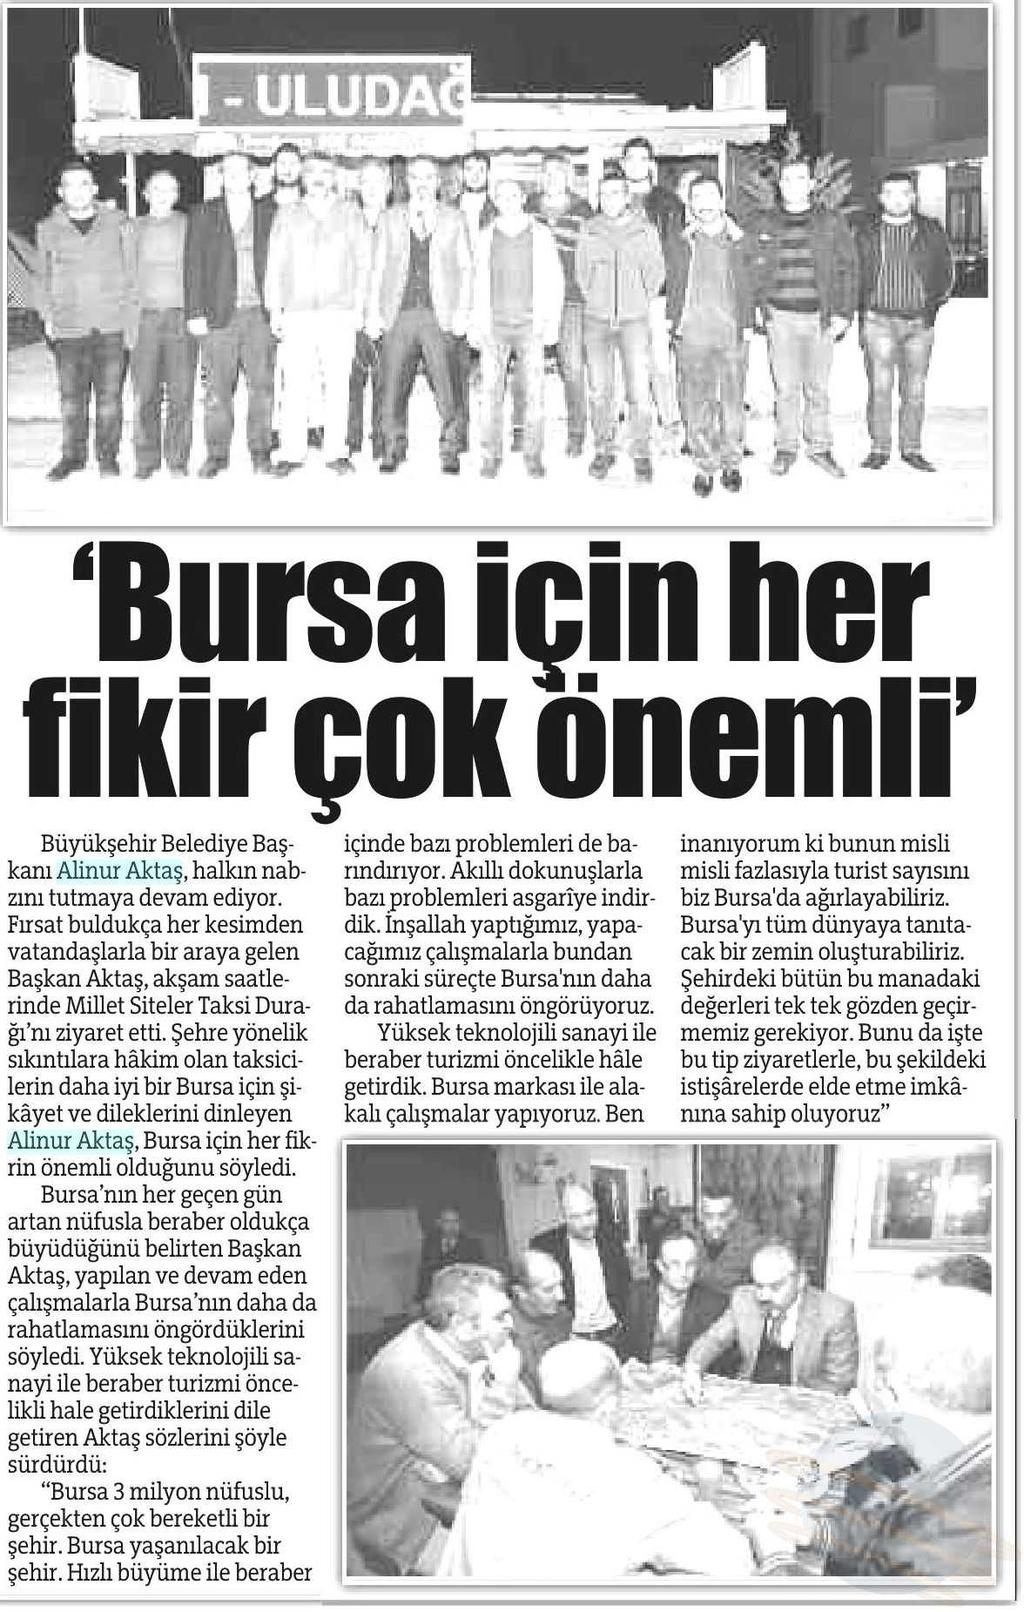 BURSADA HER FIKIR ÖNEMLI Yayın Adı : Bursa'da